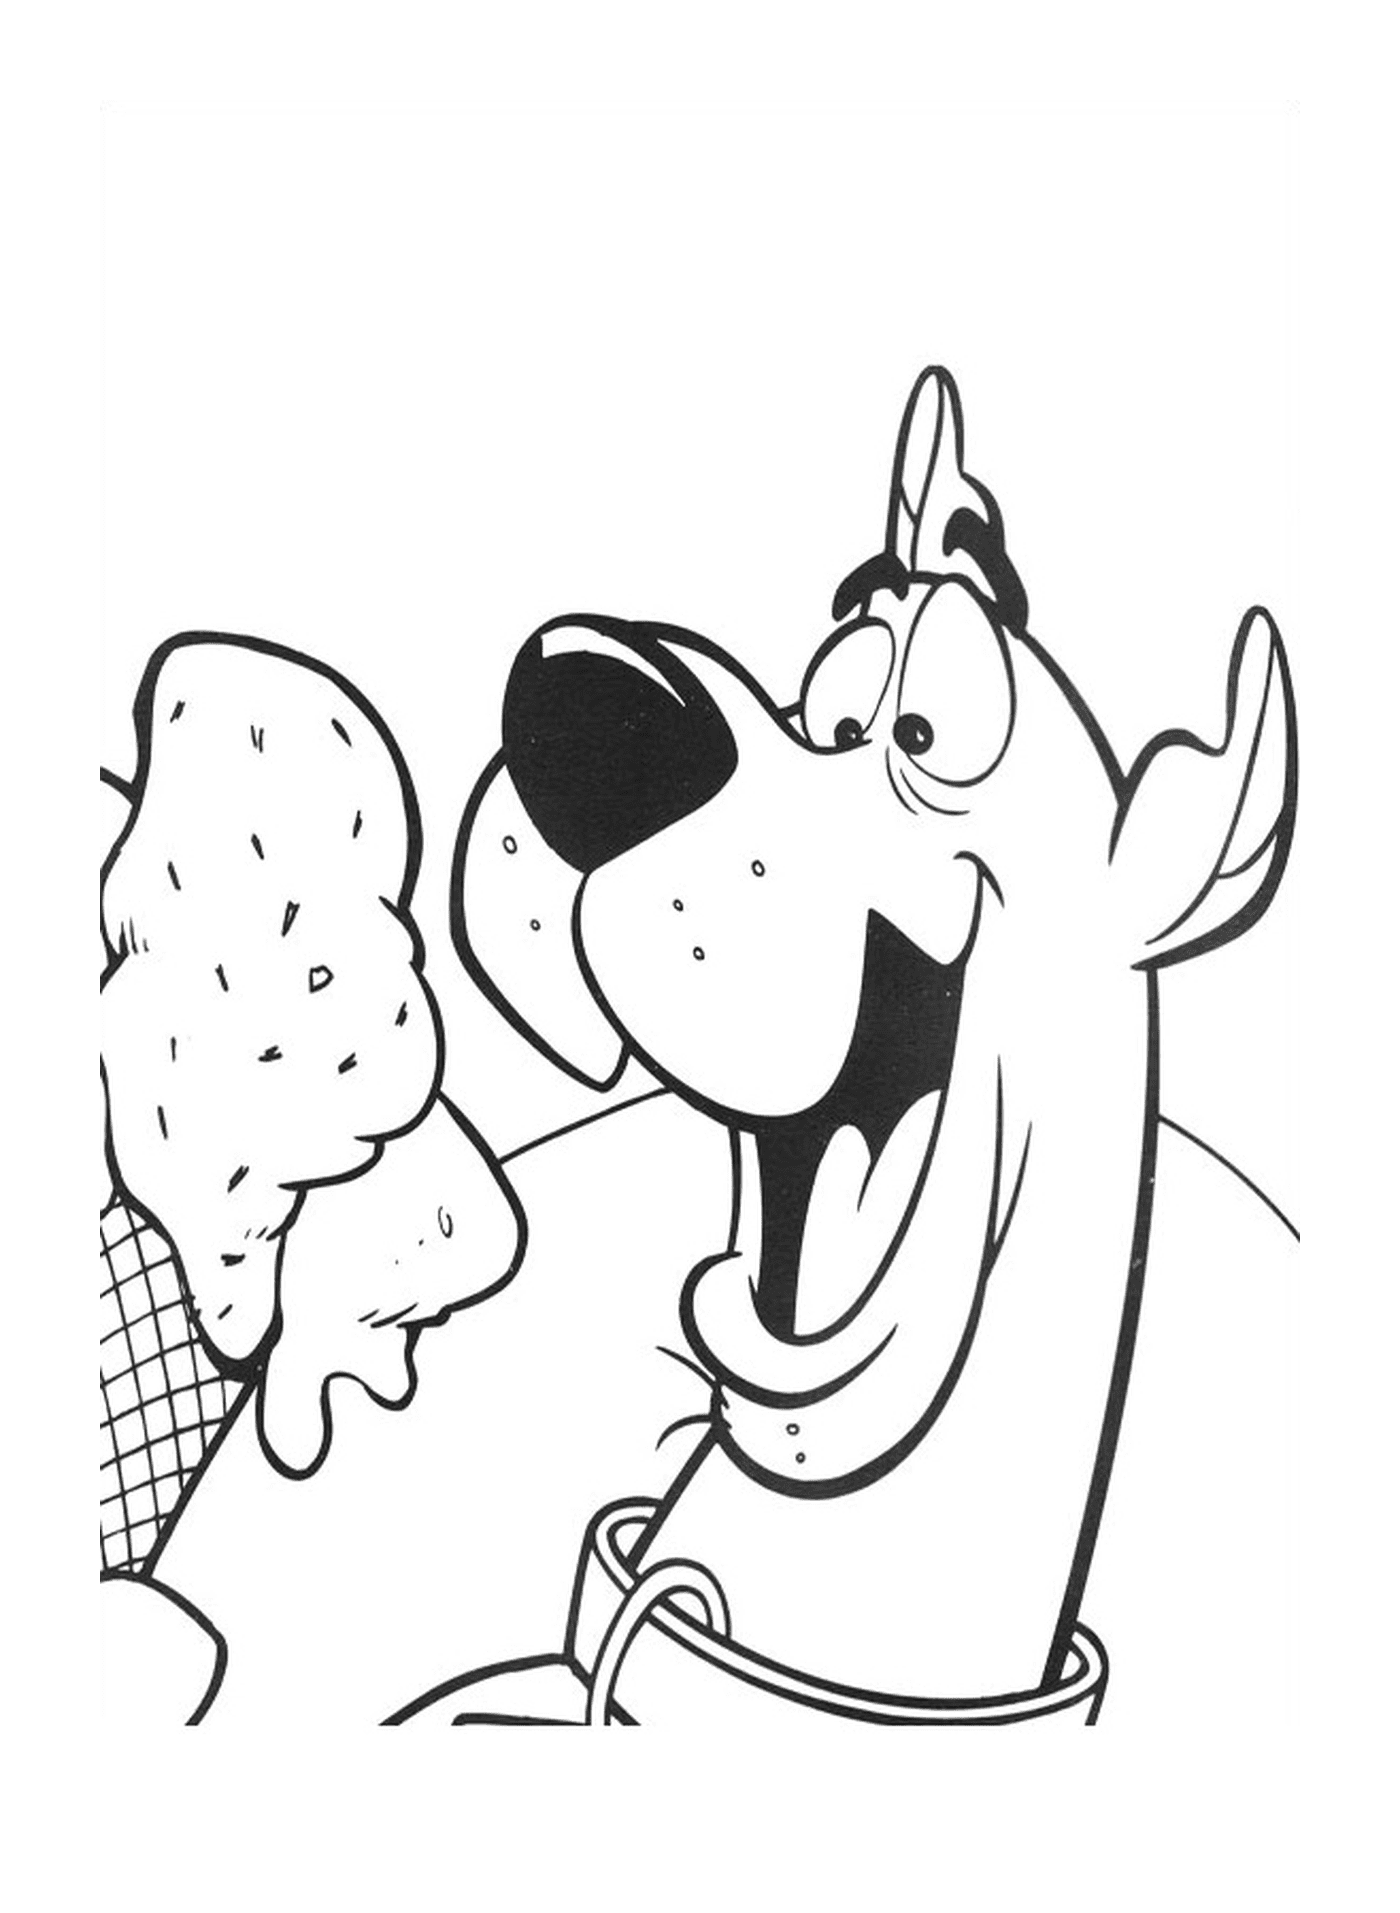   Un chien mange une glace 